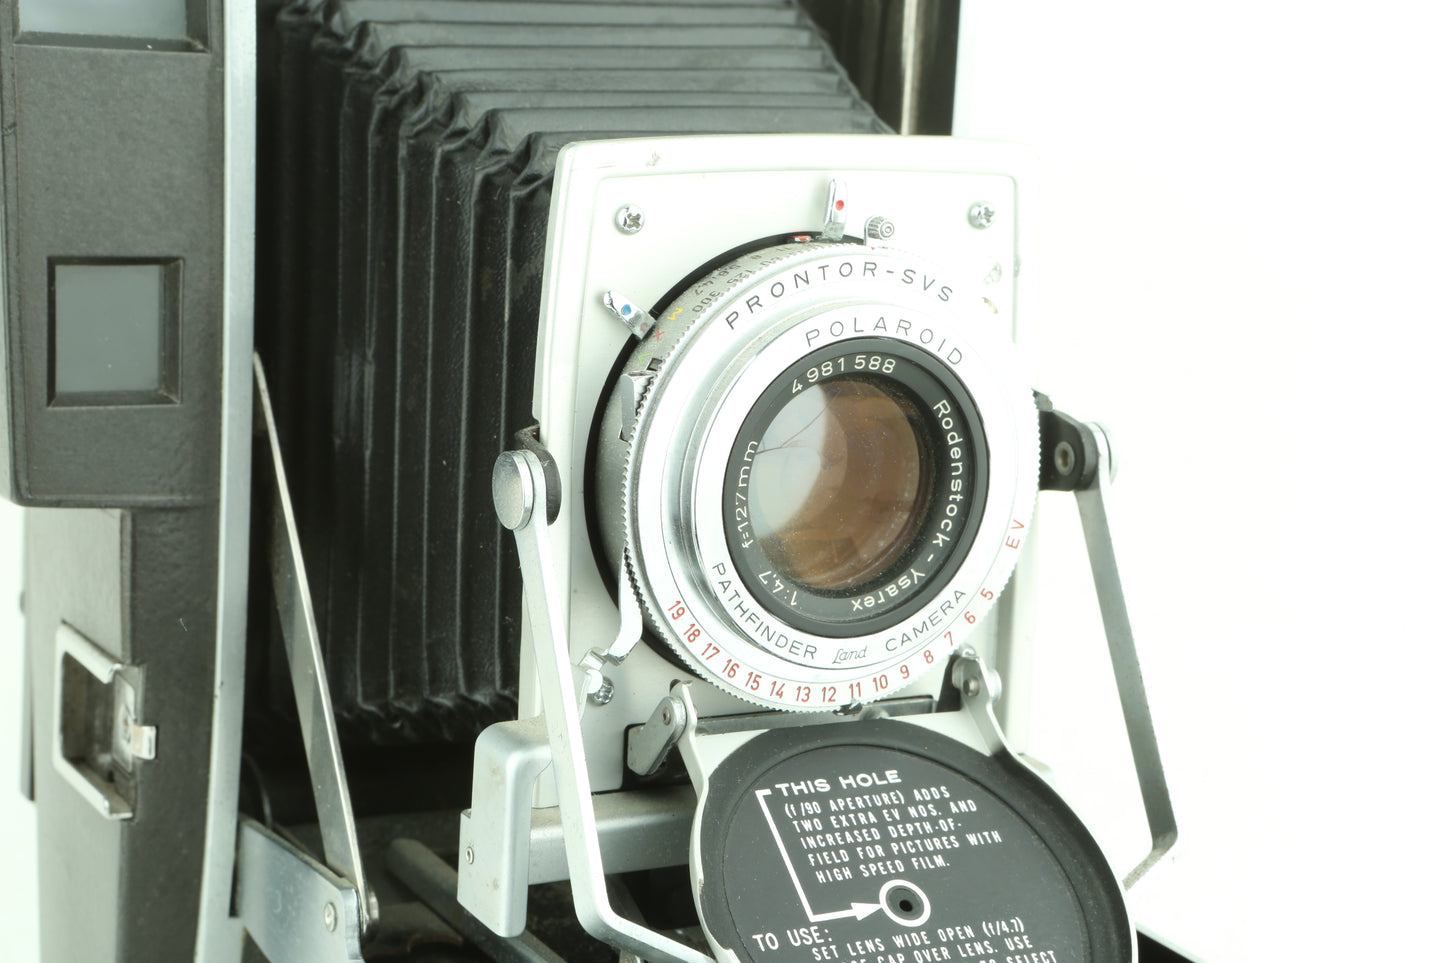 Polaroid 110B - 4x5